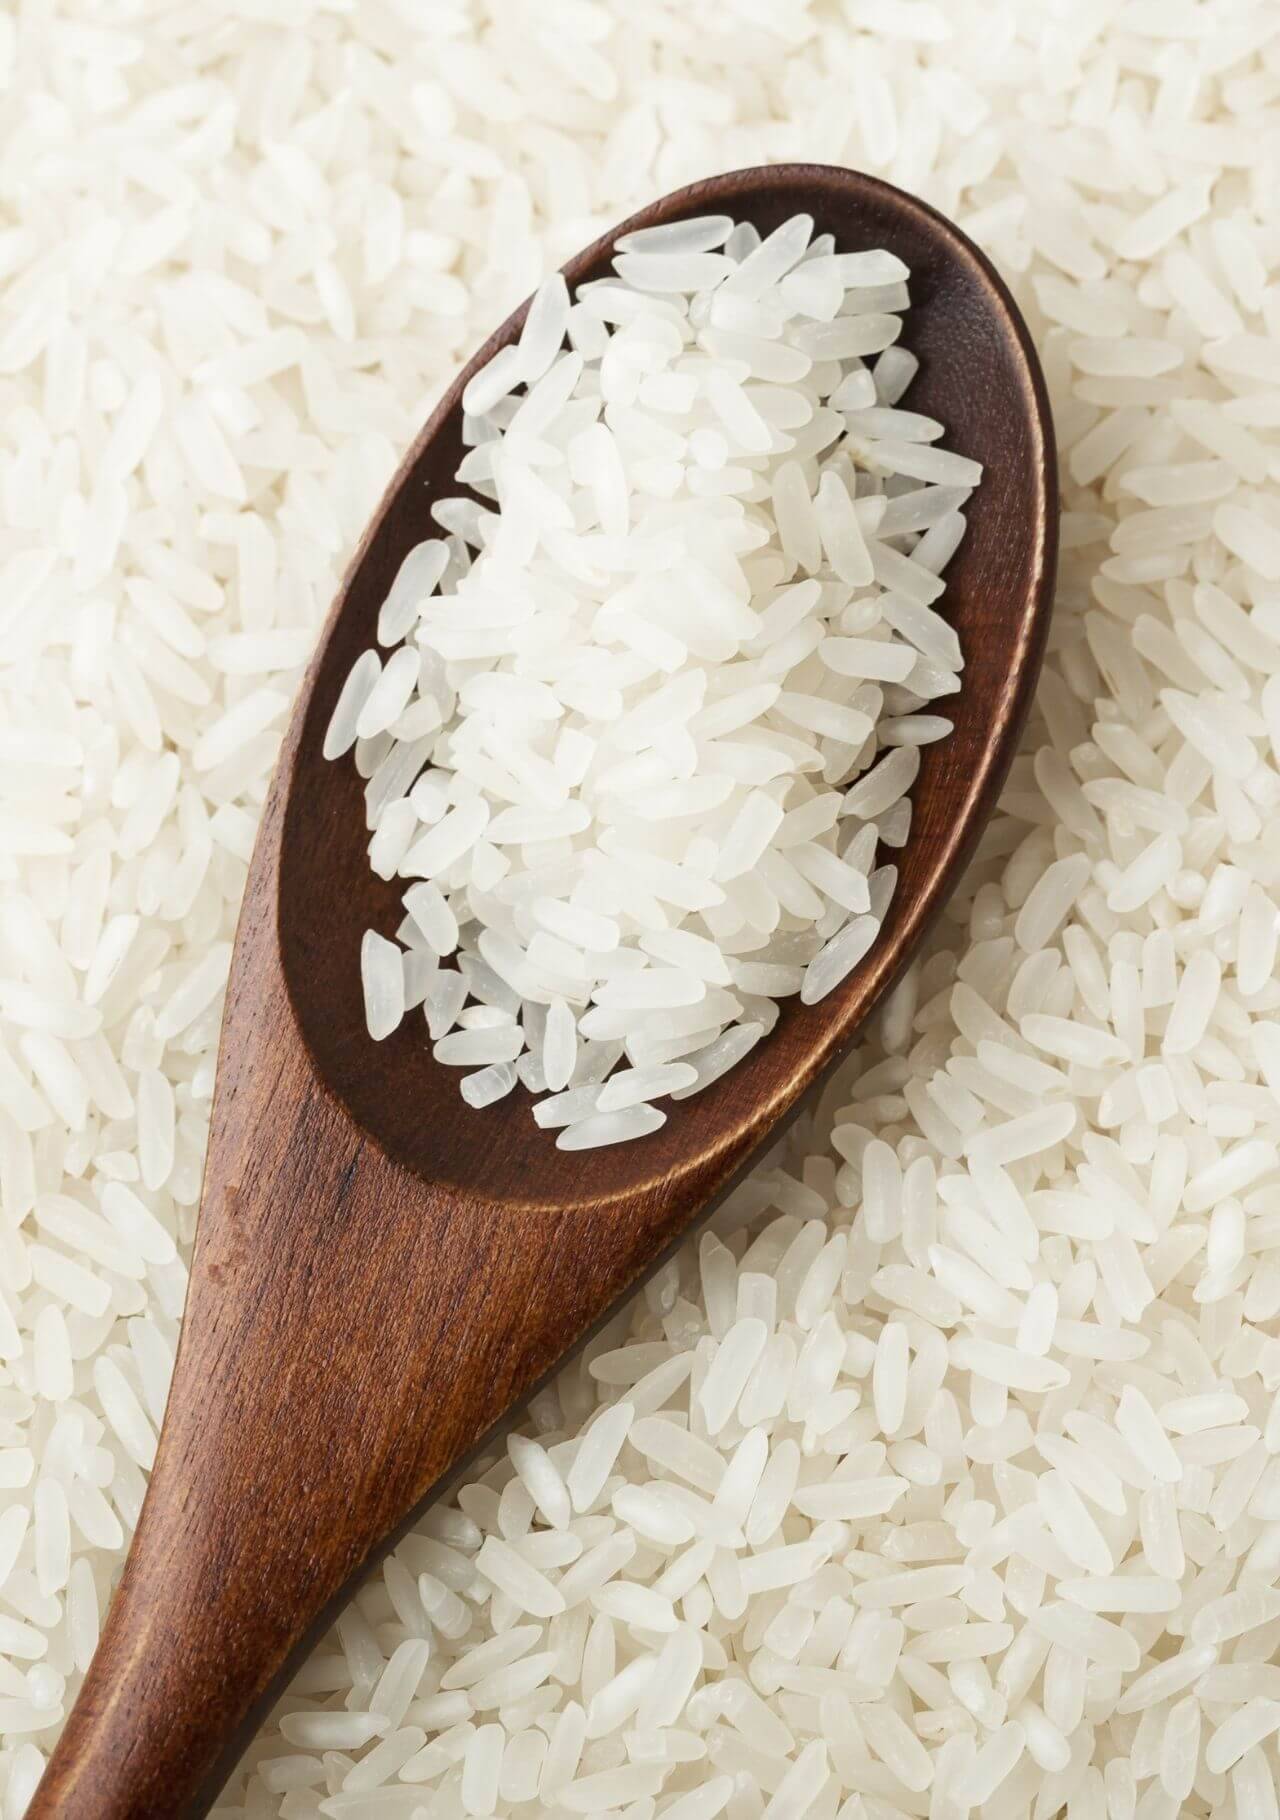 Alimentos que más han subido arroz